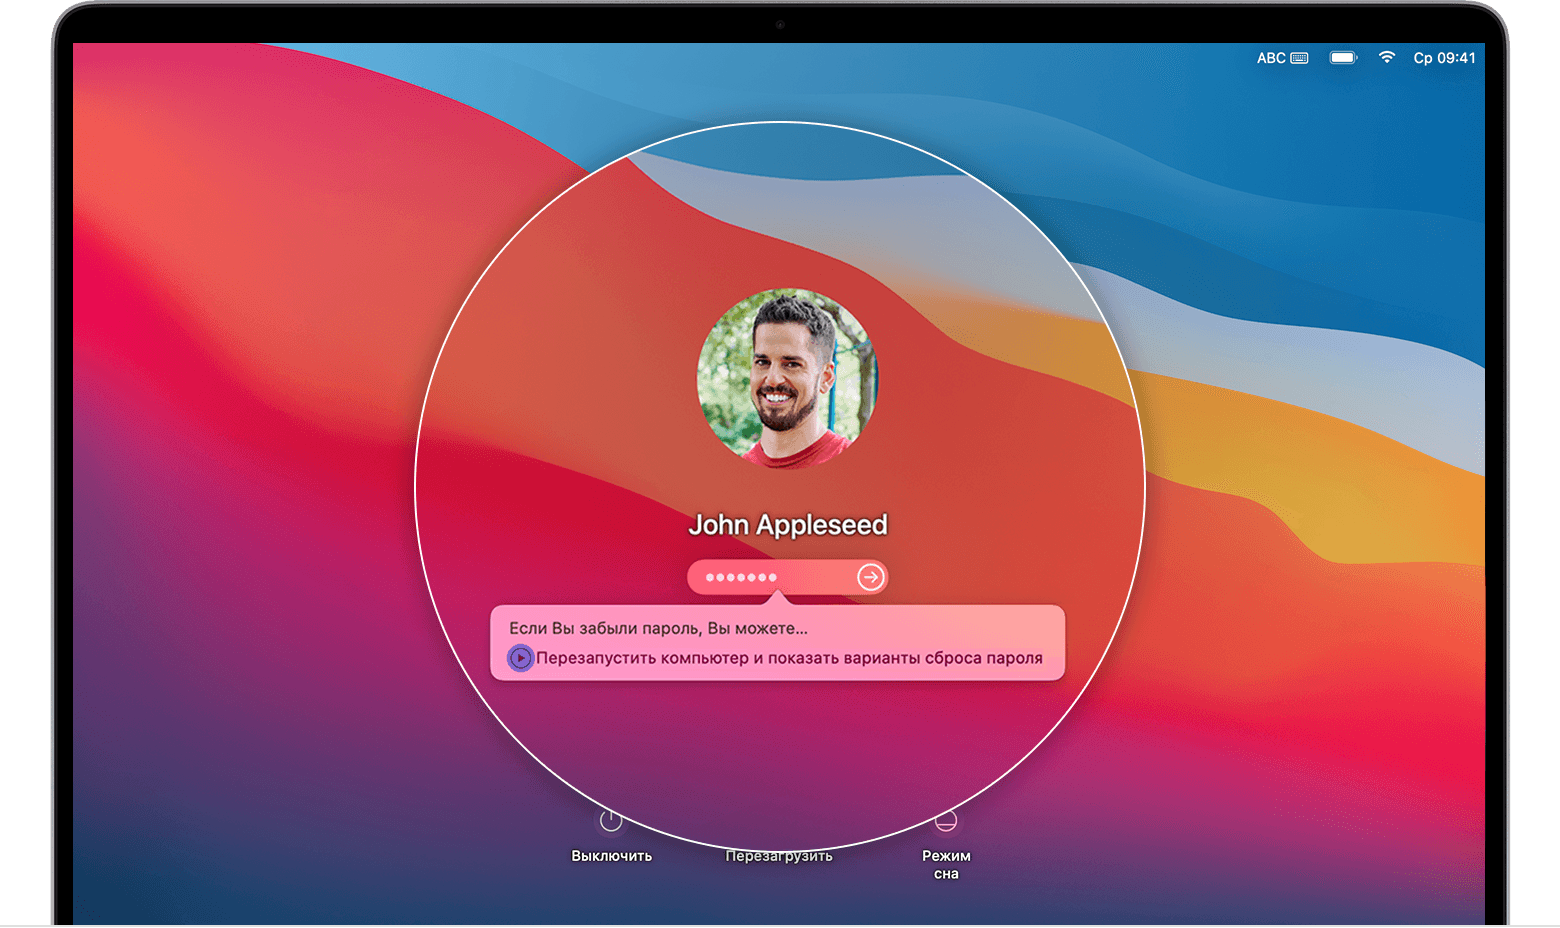 Диалоговое окно на экране входа в систему macOS Big Sur «Если вы забыли пароль, то можете перезагрузить систему и отобразить варианты сброса пароля».